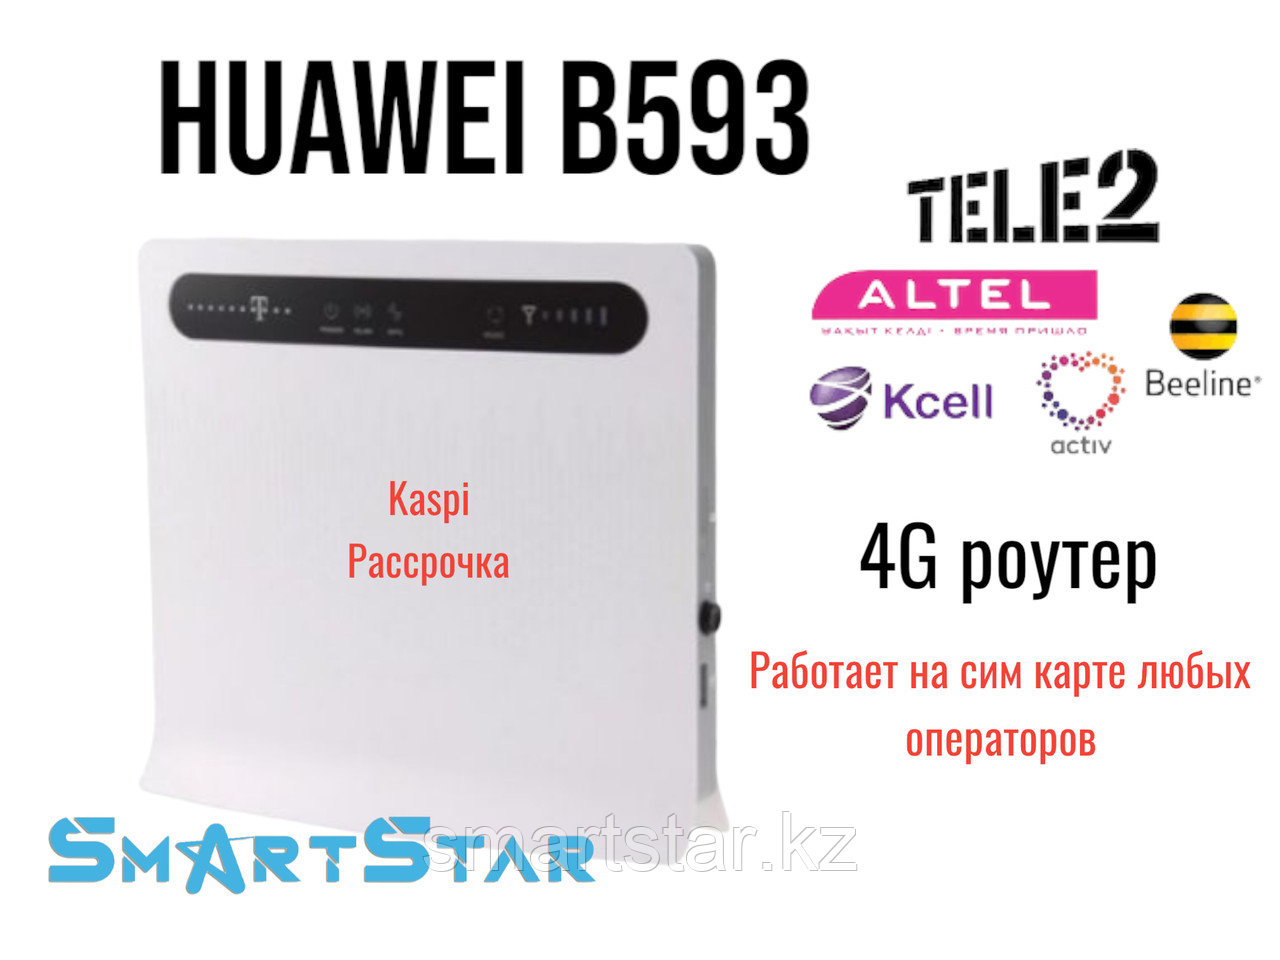 Мощный 4G роутер (модем ) Huawei B593 работает со всеми операторами